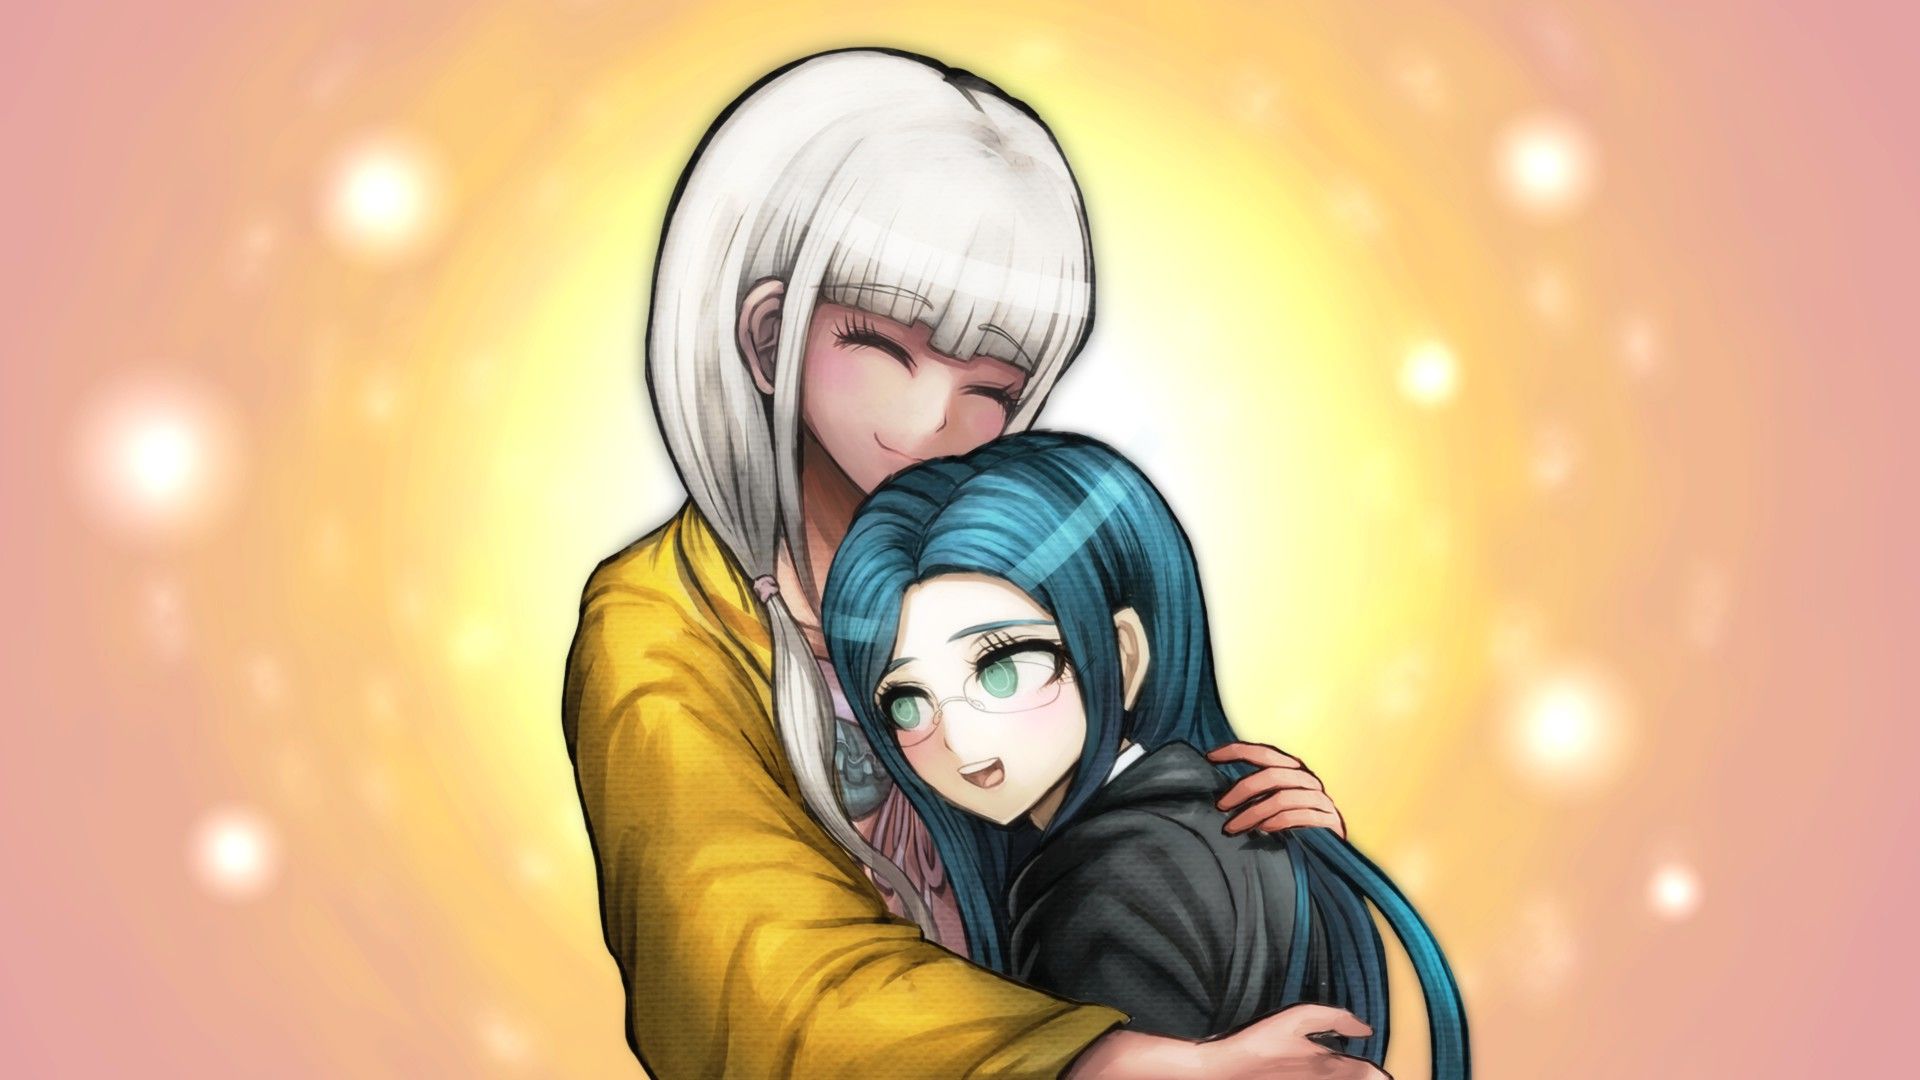 Angie hugging Tsumugi.